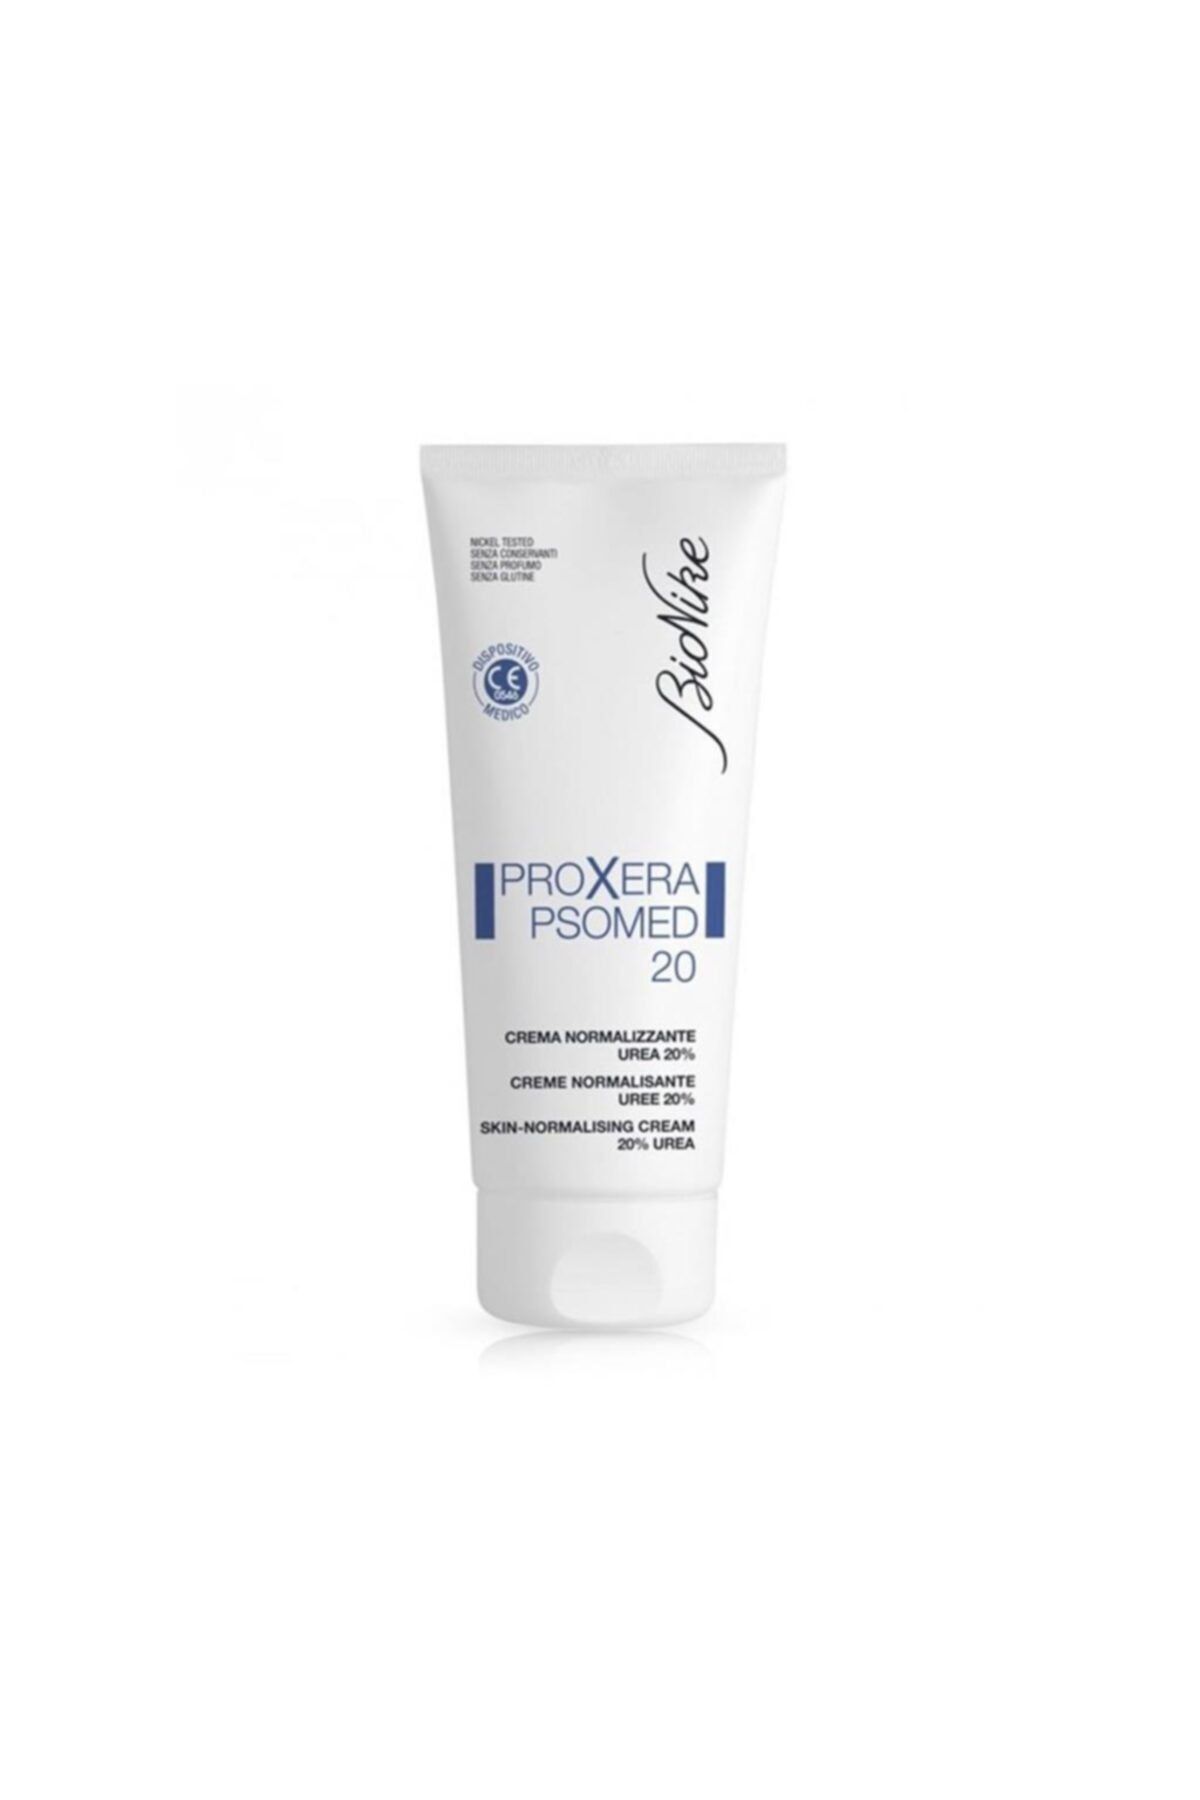 BioNike Proxera Psomed 20 Skin-normalising Cream 200 ml